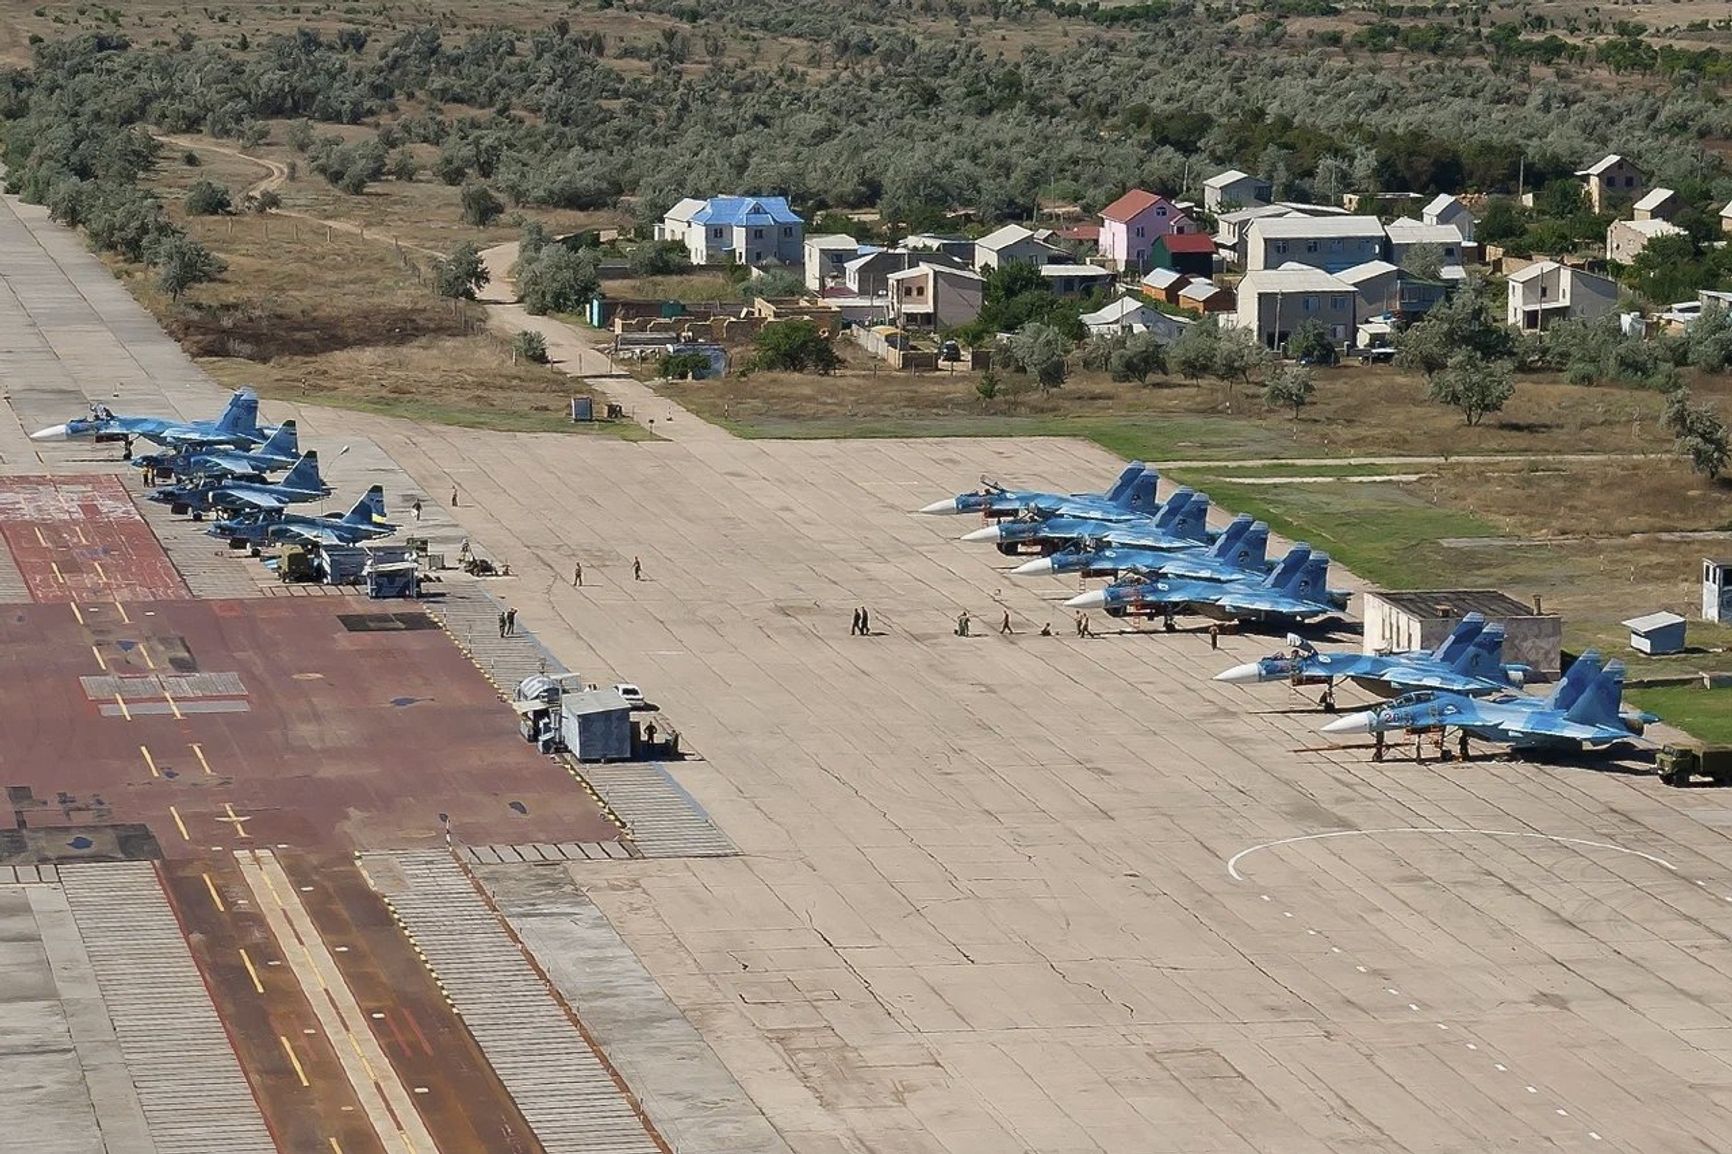 Опубликованы первые спутниковые снимки аэродрома в Крыму, на них не менее 10 сгоревших после взрывов самолетов